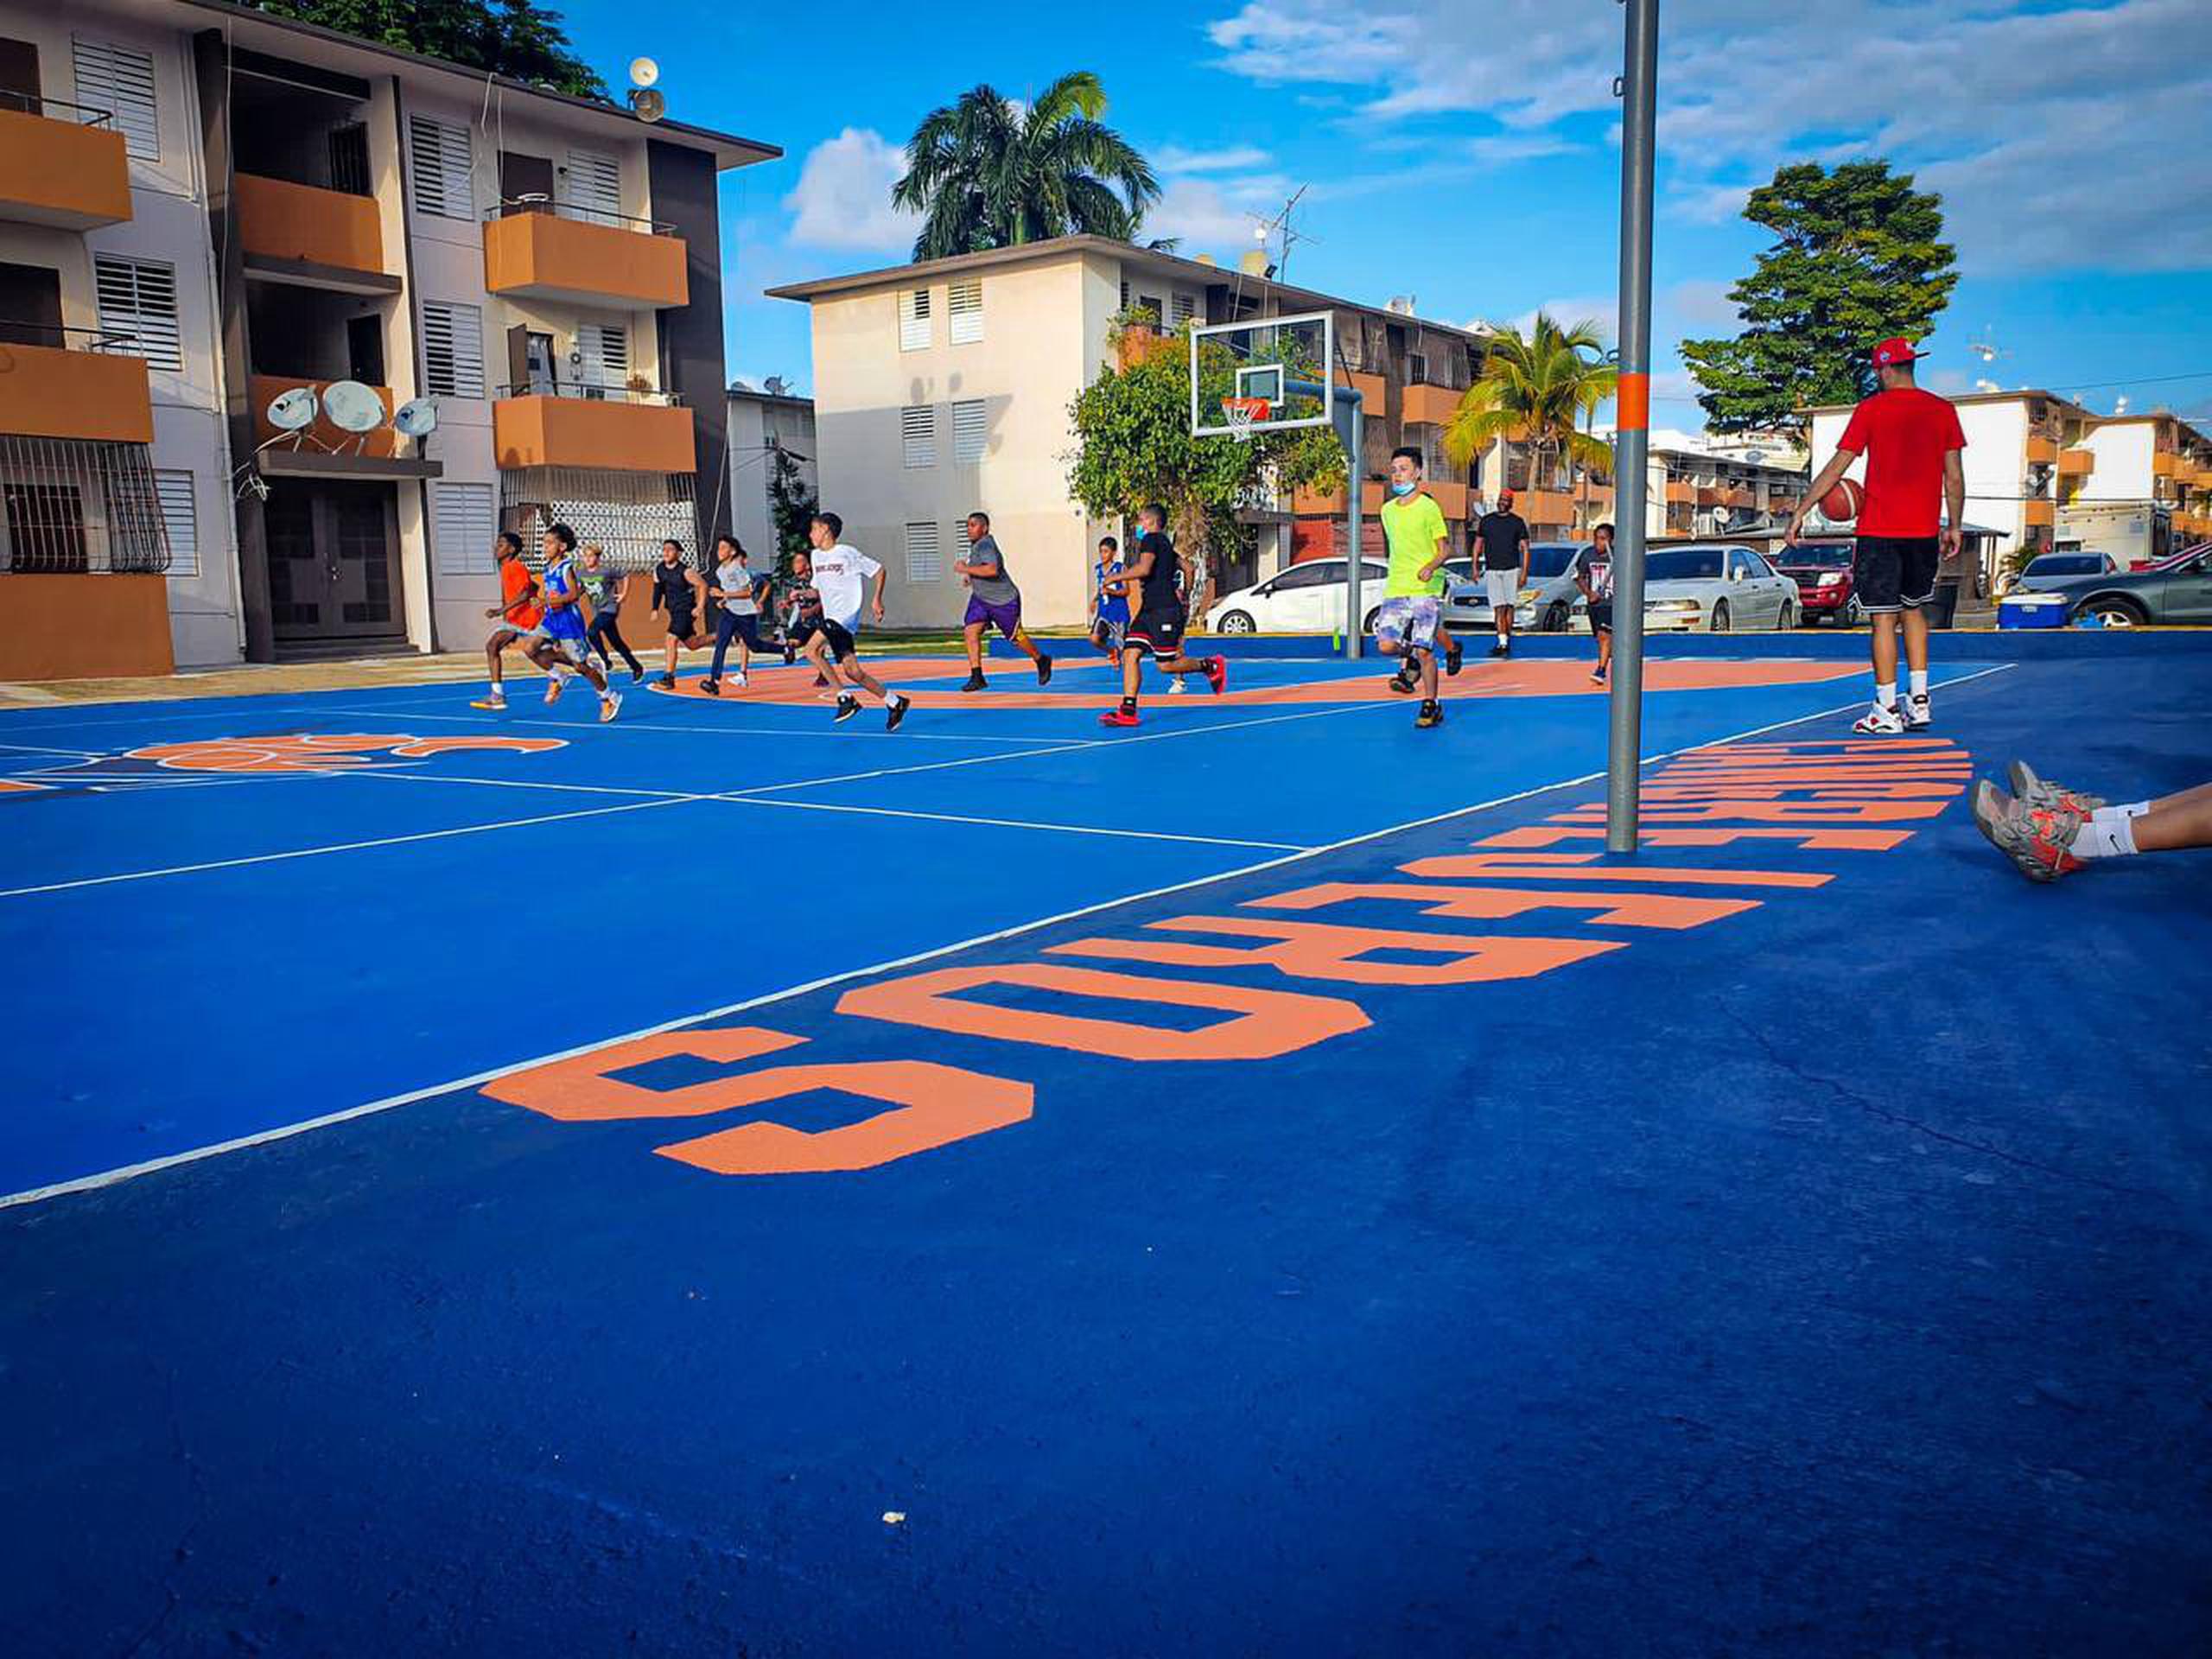 Un grupo de niños juega en la cancha de baloncesto del residencial Luis Llorens Torres, en Santurce.